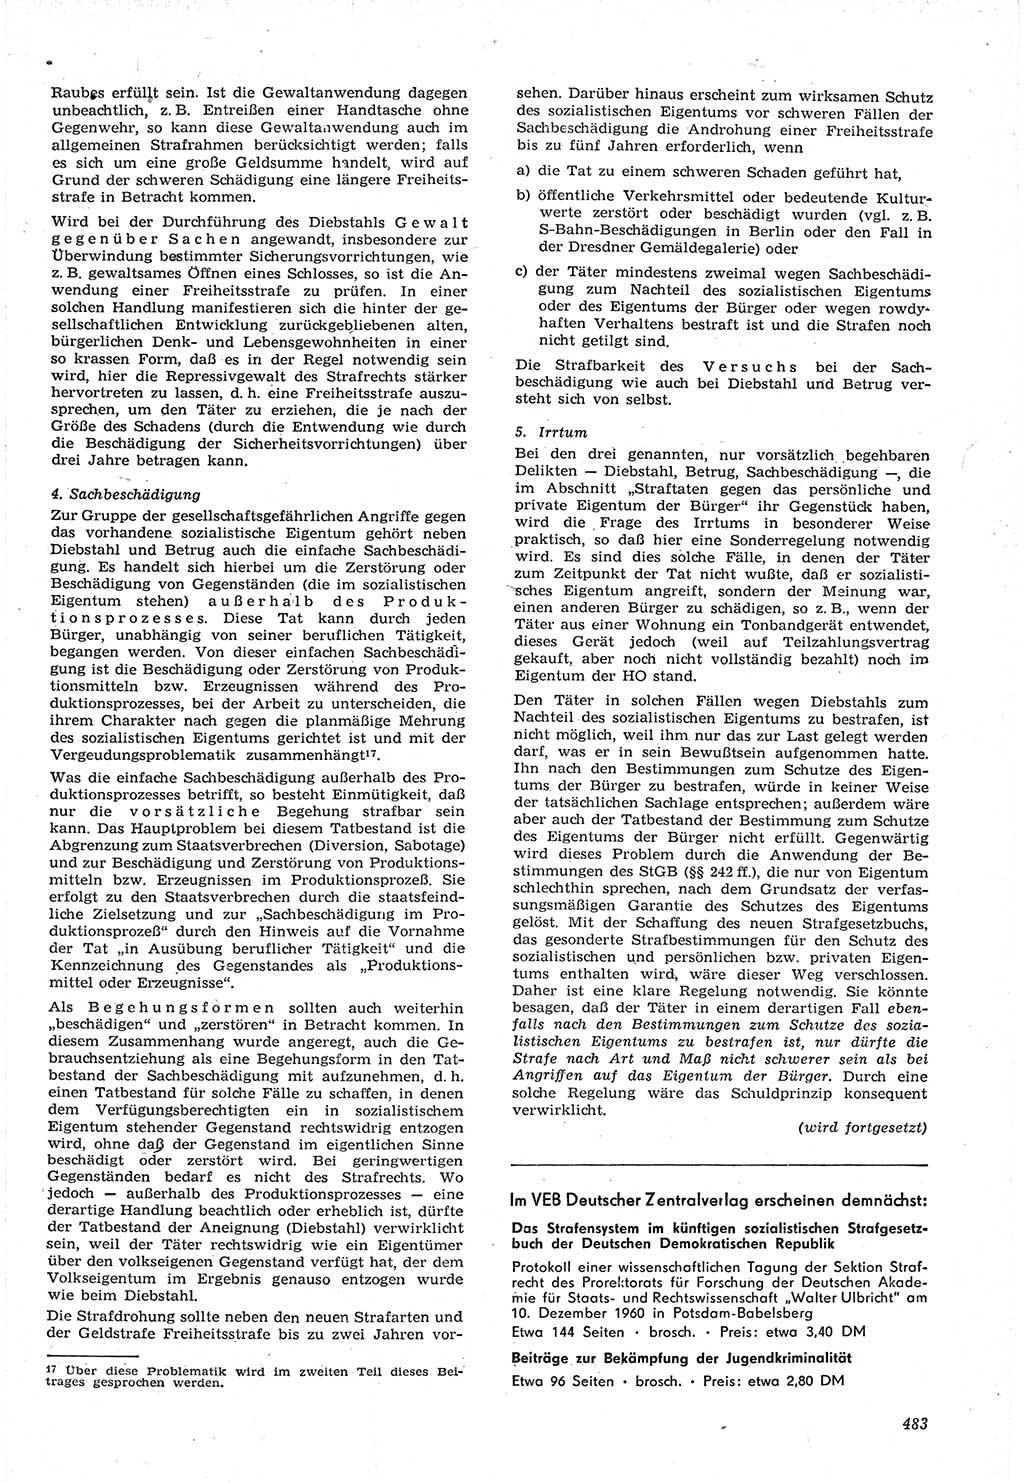 Neue Justiz (NJ), Zeitschrift für Recht und Rechtswissenschaft [Deutsche Demokratische Republik (DDR)], 15. Jahrgang 1961, Seite 483 (NJ DDR 1961, S. 483)